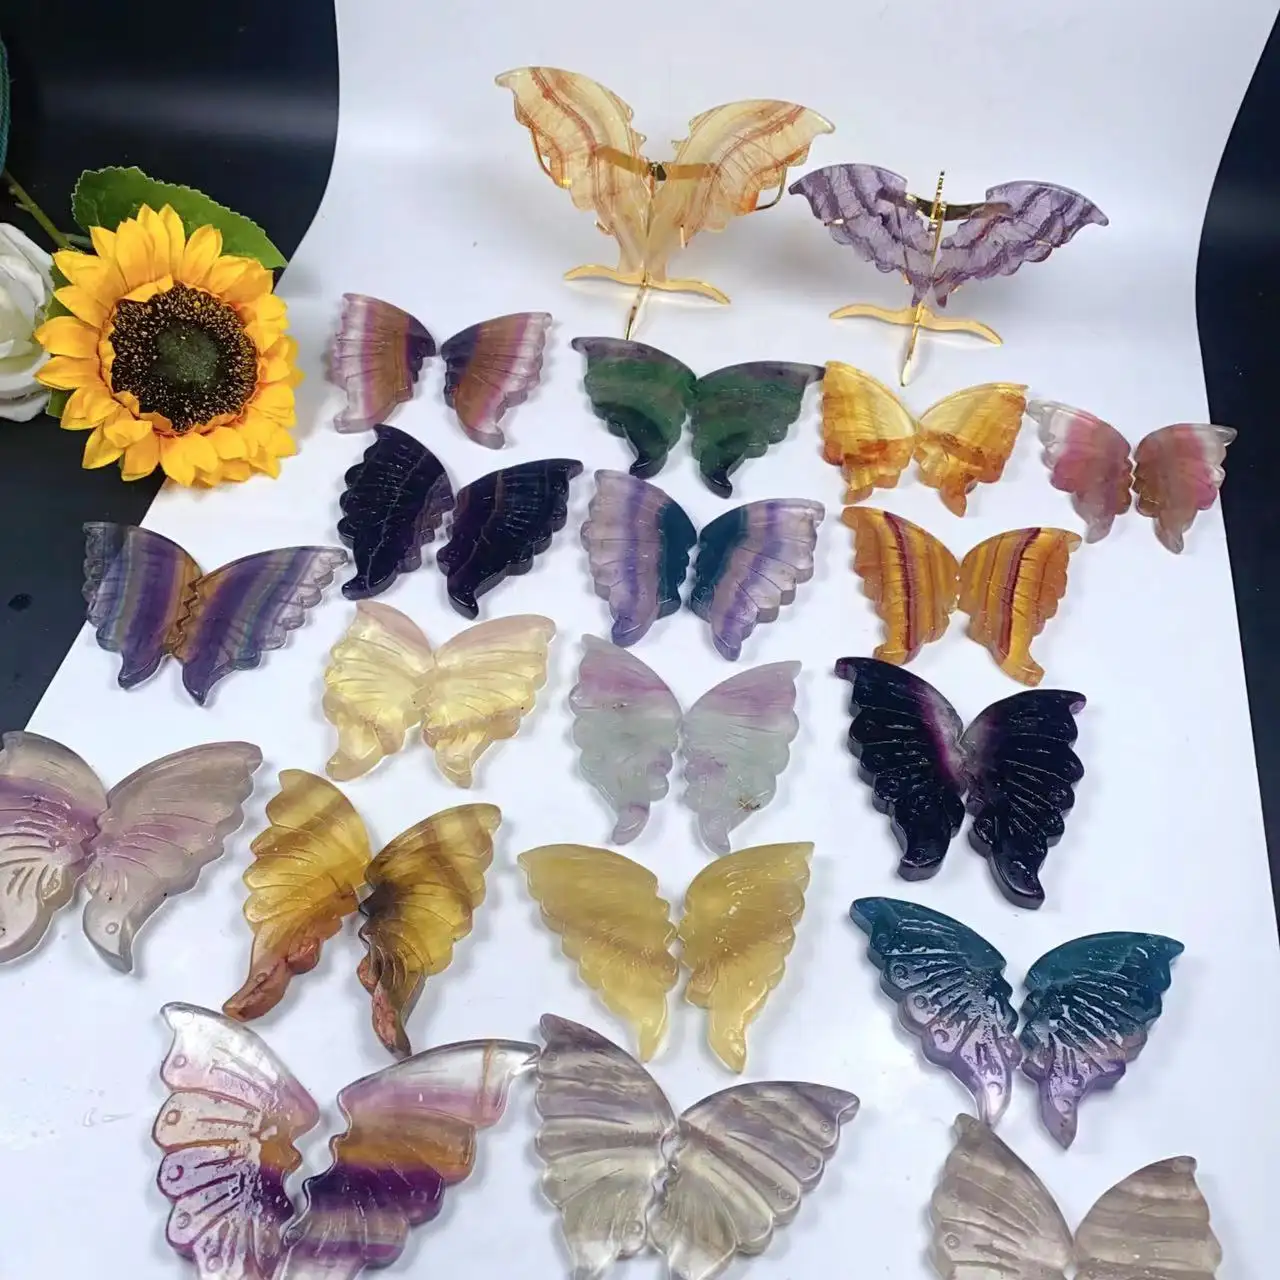 Commercio all'ingrosso naturale intagliato animale Fluorite farfalla cristallo intaglio artigianato per la decorazione dei regali